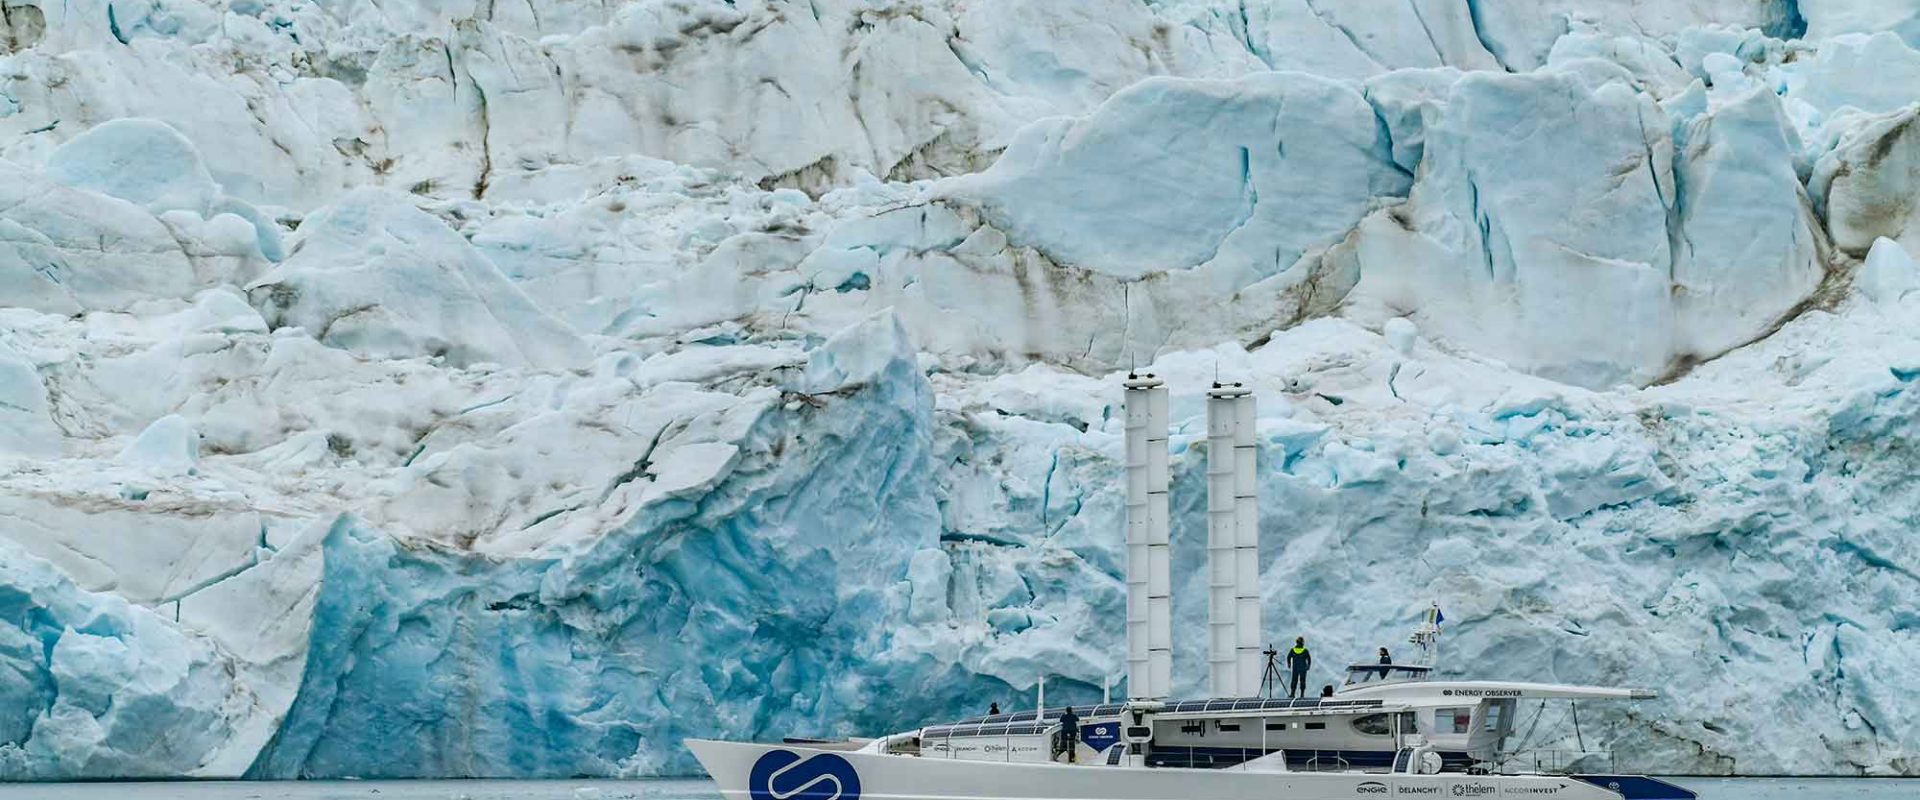 Energy Observer erreicht Spitzbergen